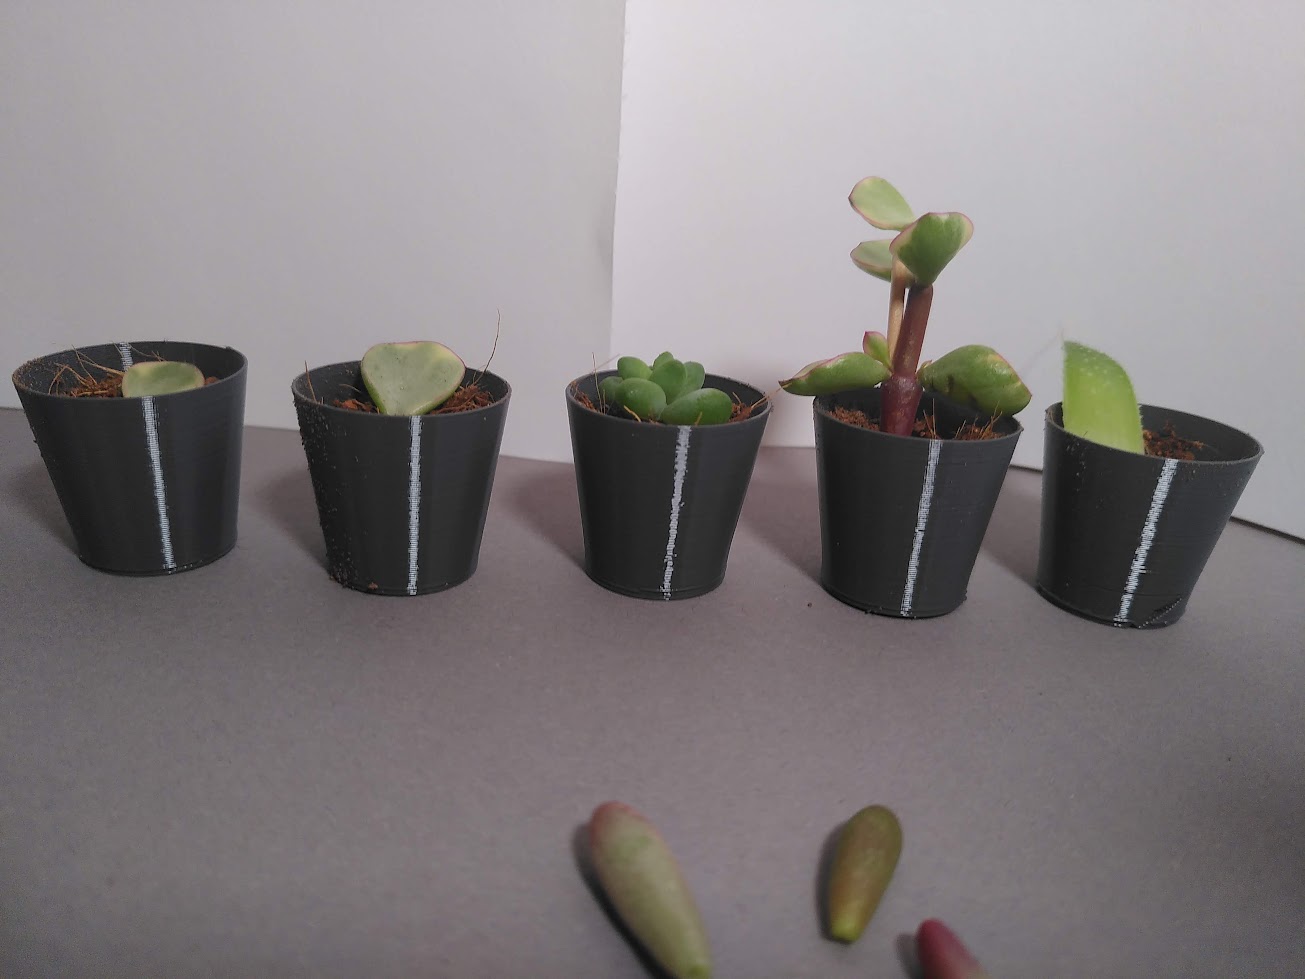 Vase Mode Succulent propagation planter